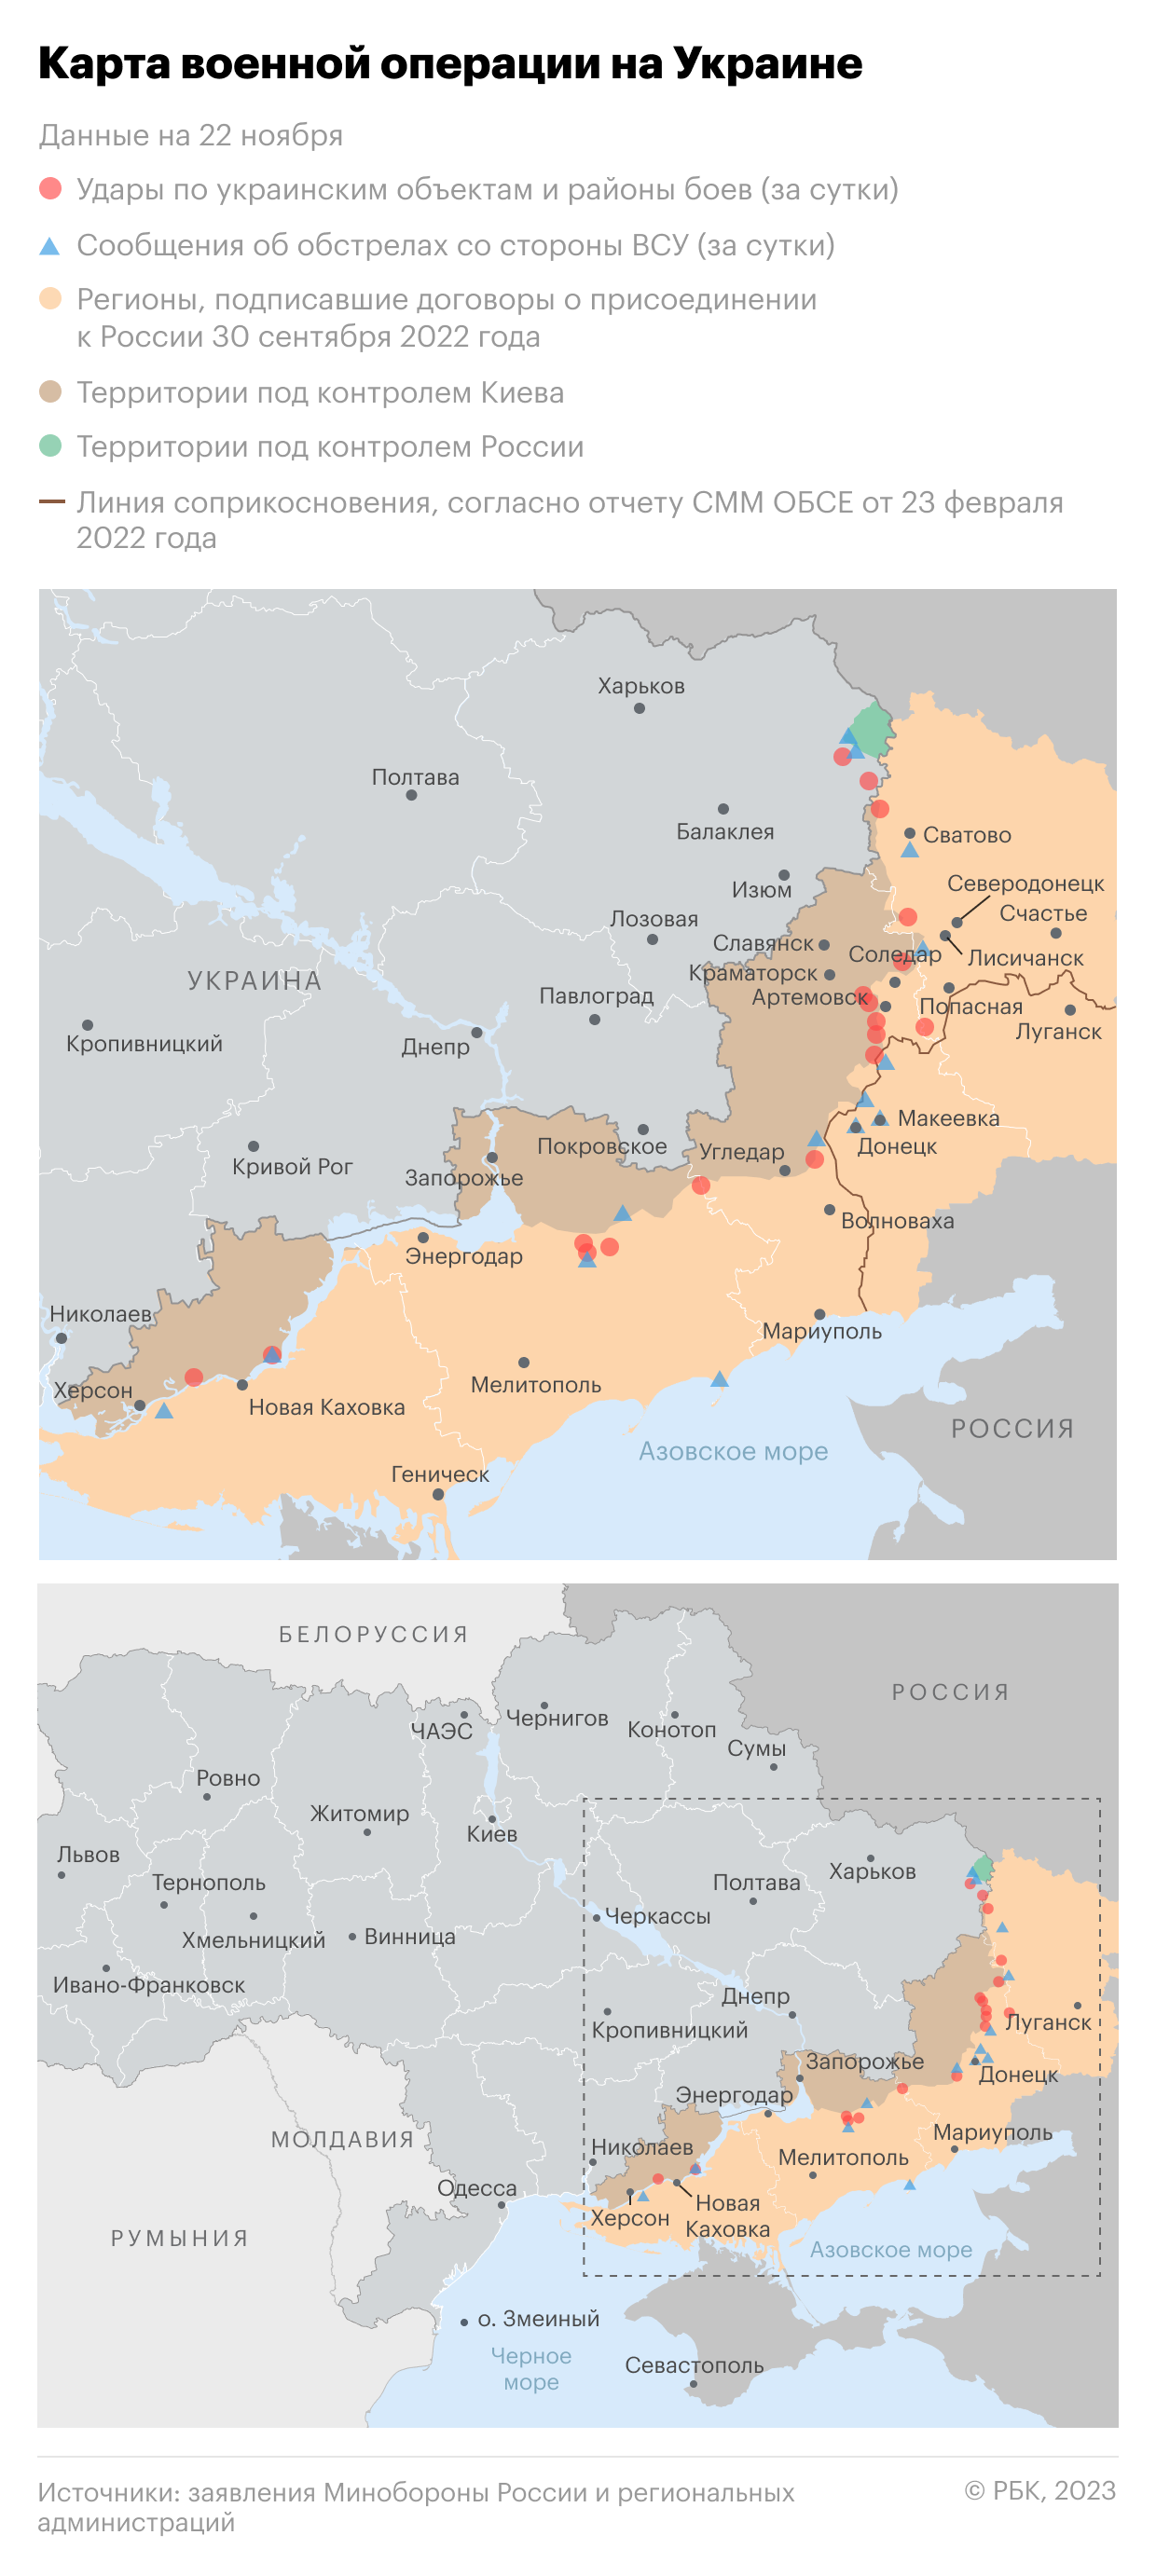 Военная операция на Украине. Карта на 22 ноября